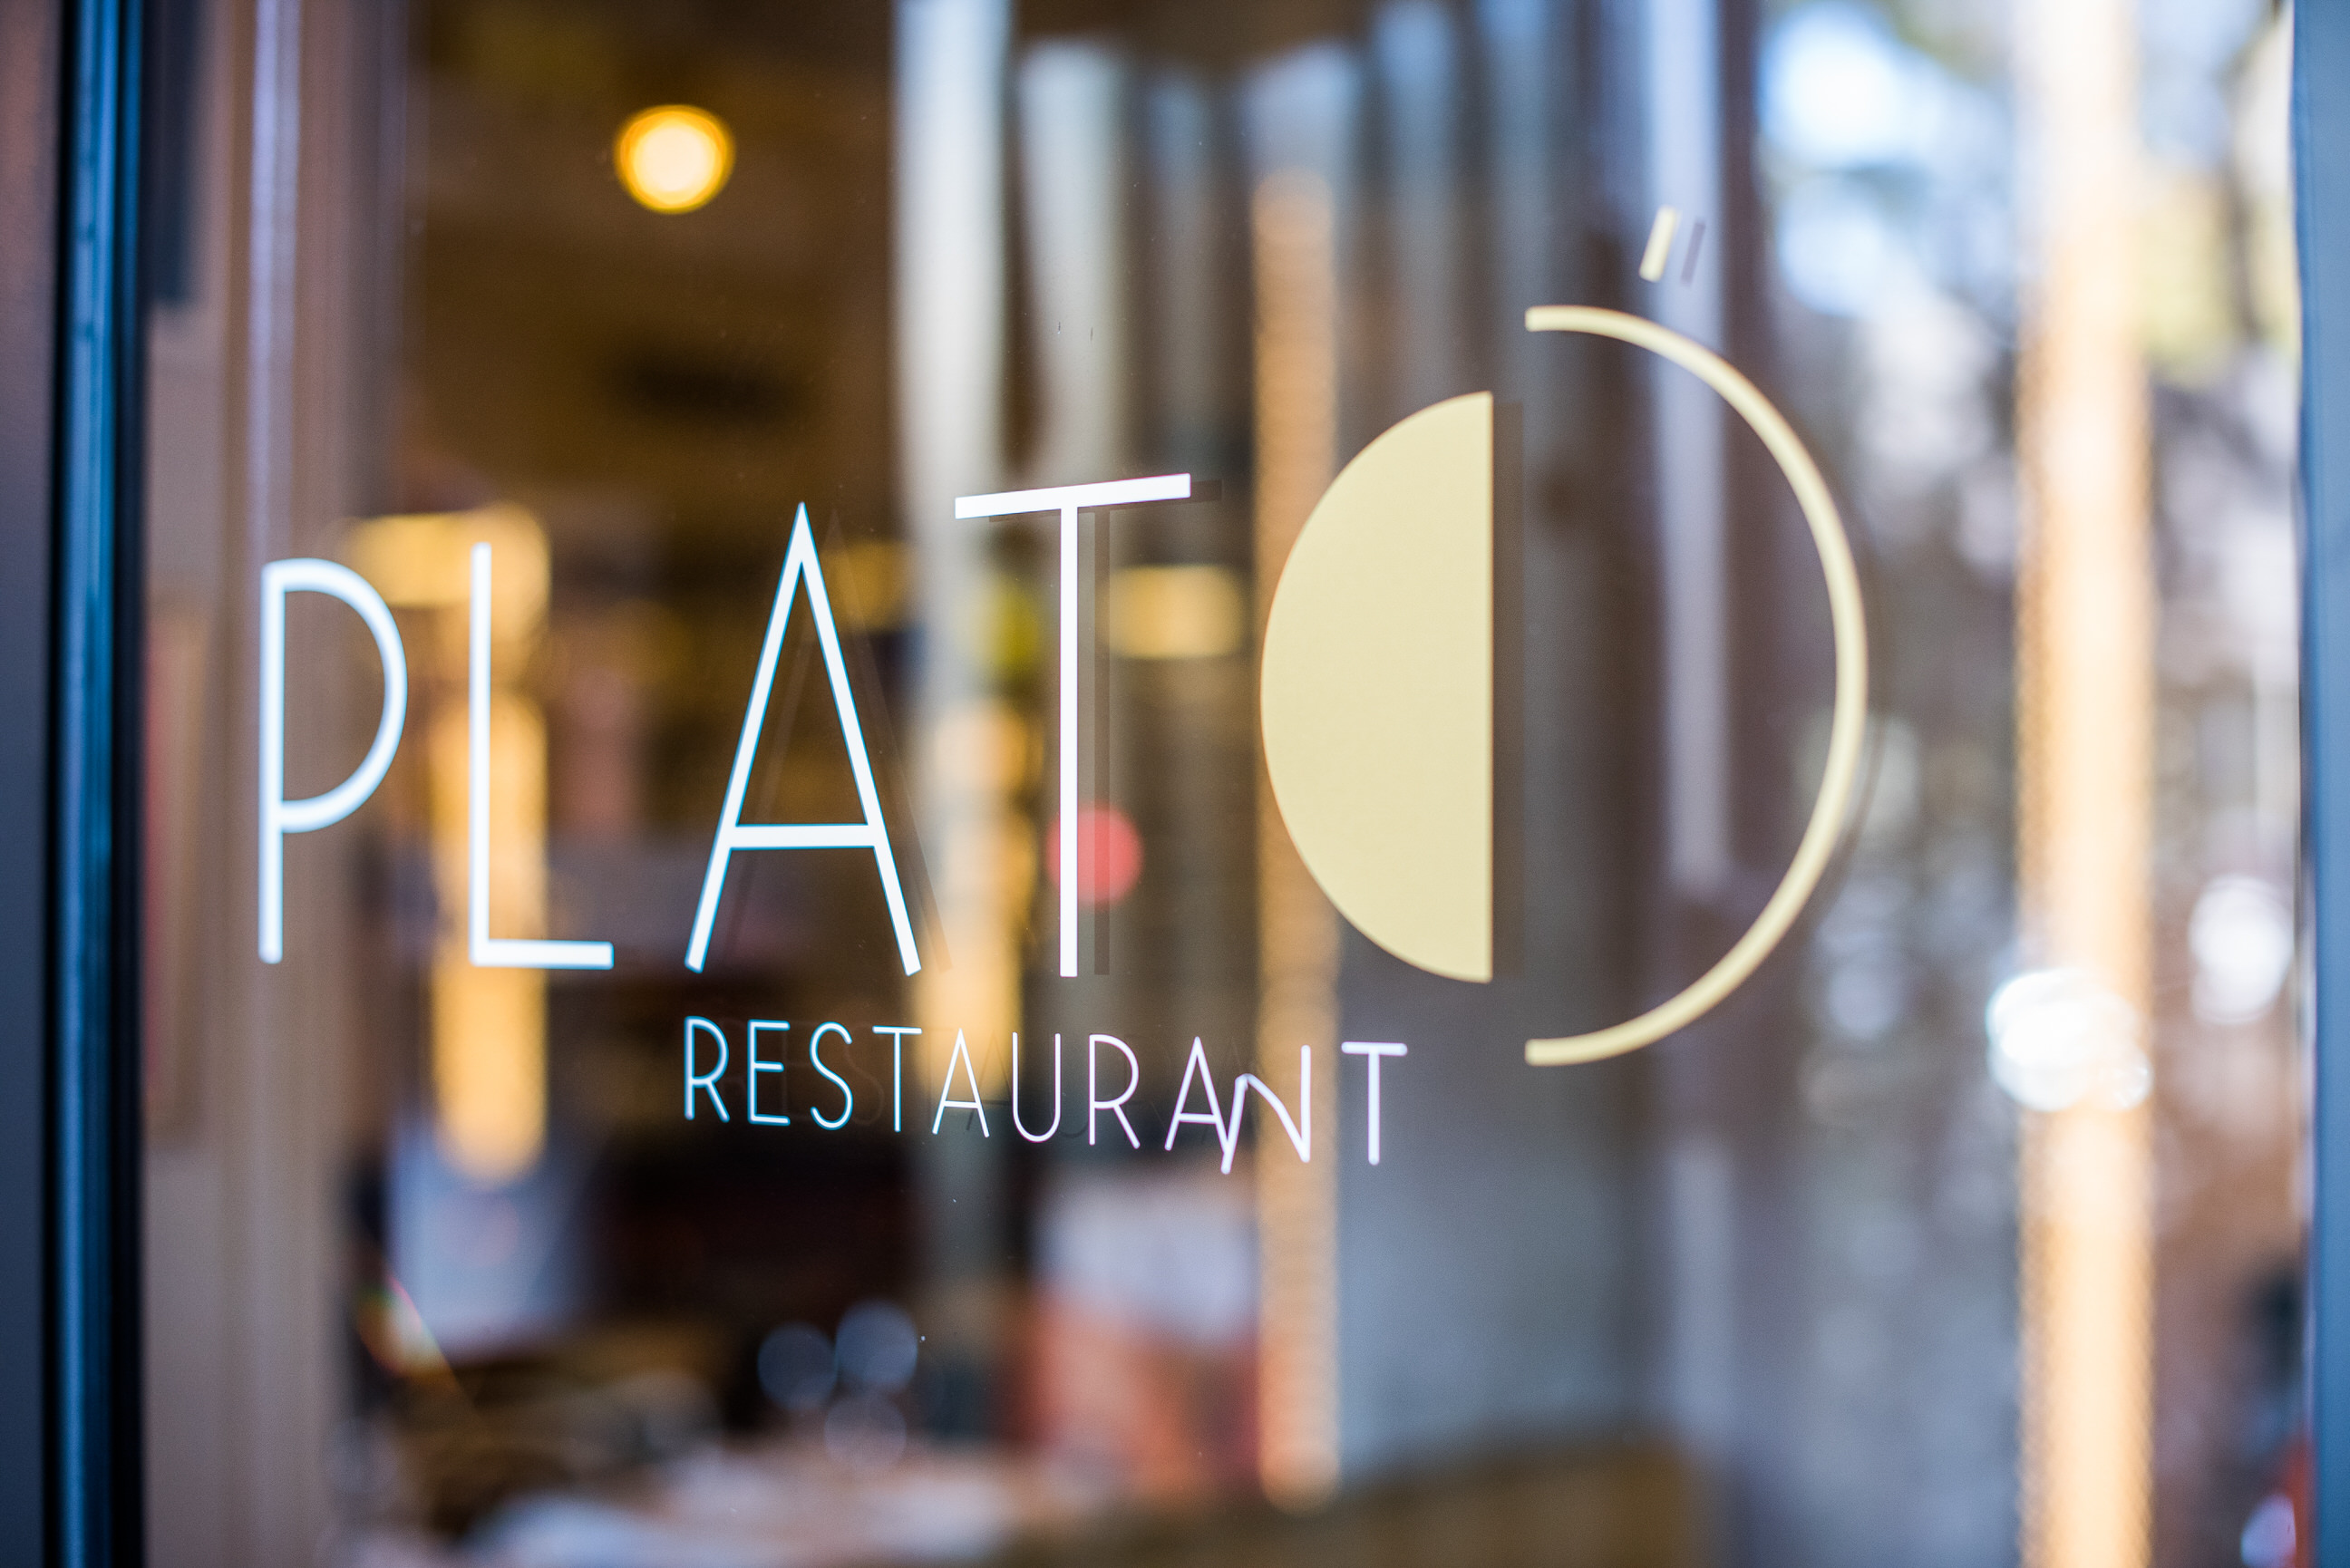 Plató Restaurante: La mejor gastronomía tras una ruta por los museos de Madrid